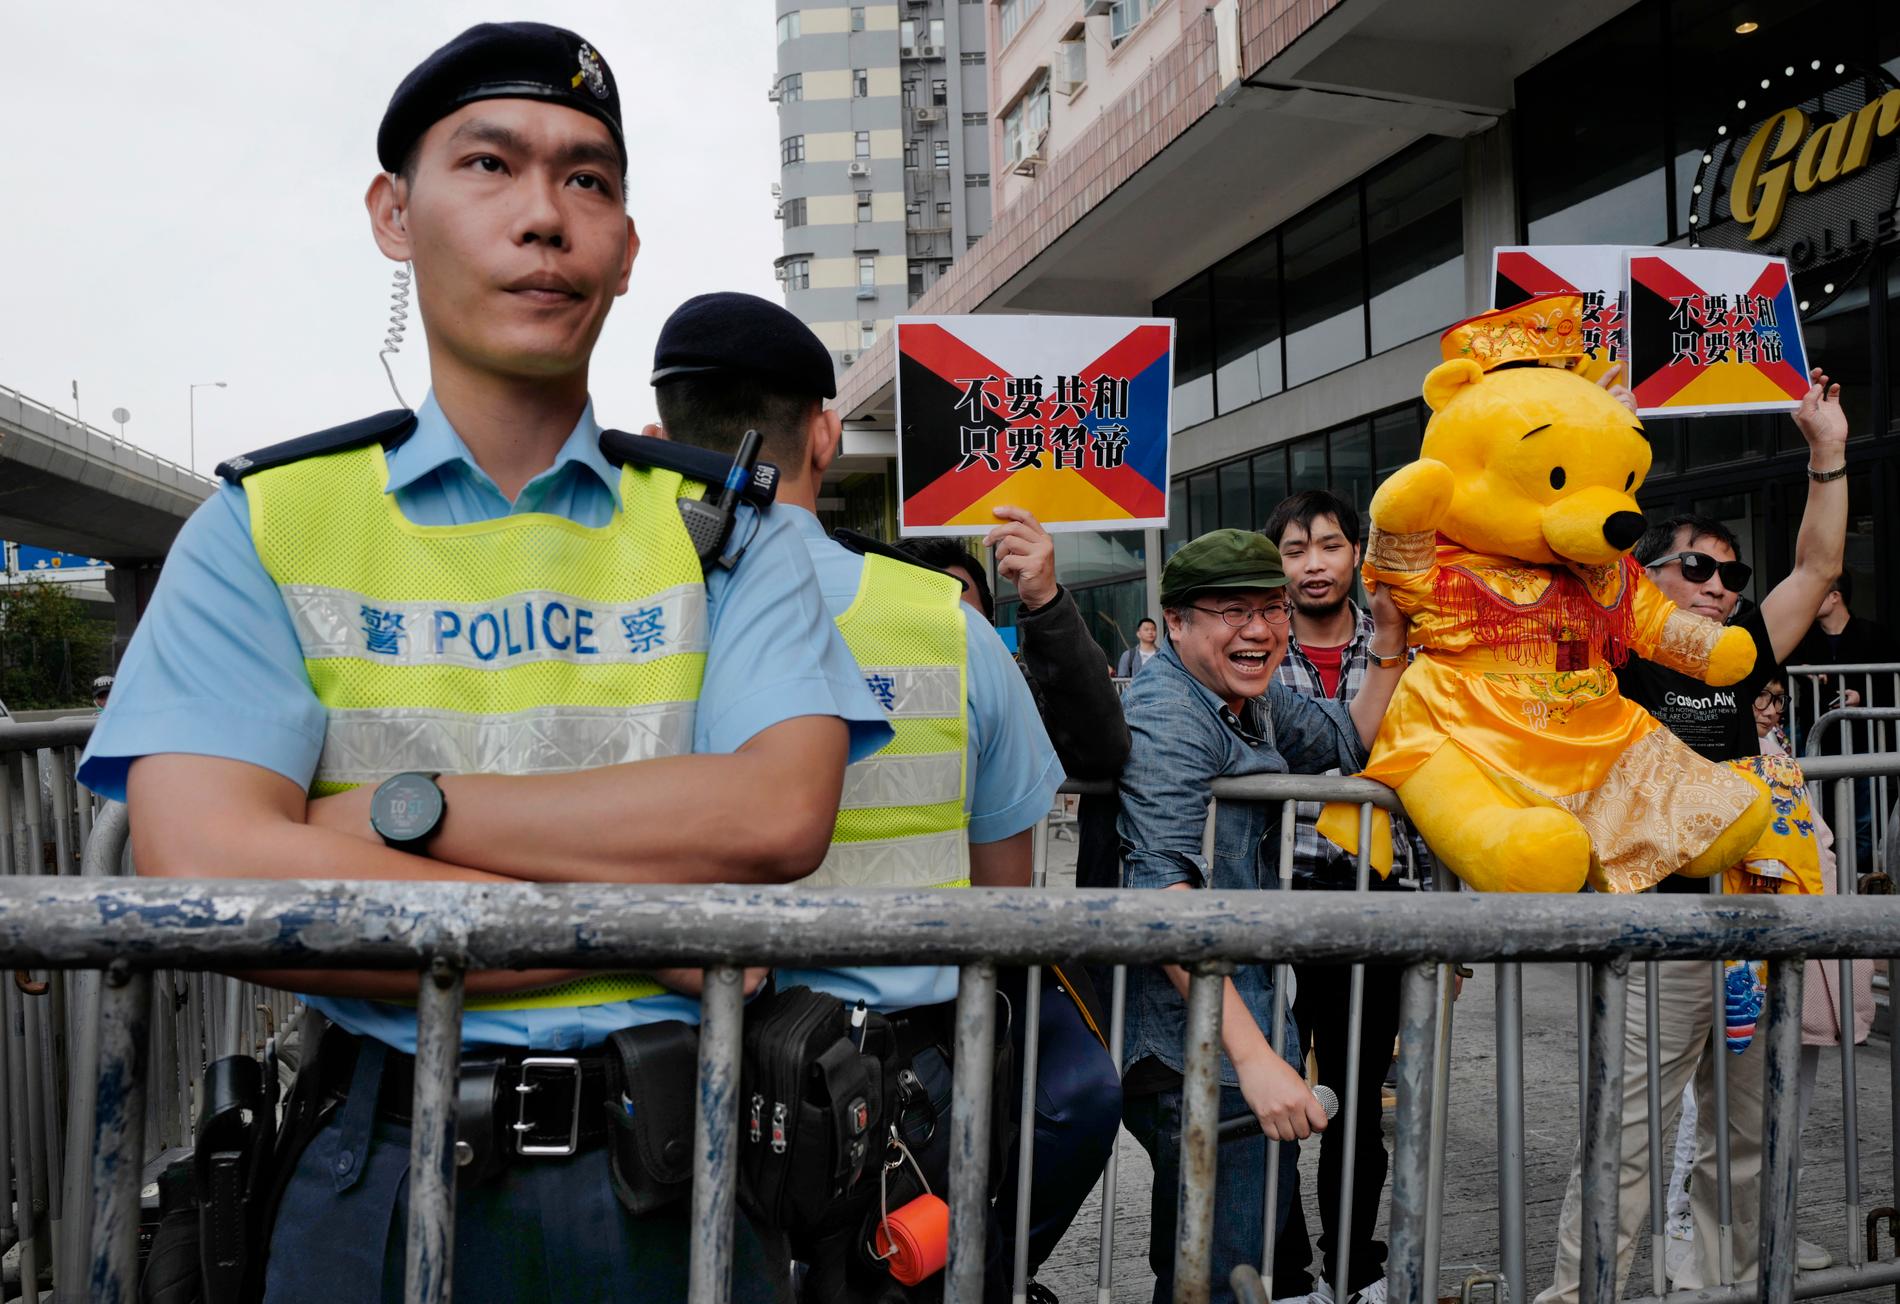 Regimkritiska demonstranter i Hongkong med Nalle Puh utklädd till kejsare, en symbol för president Xi Jinping. Regimen är känslig för kritik och nalle Puh har utsatts för censur. Arkivbild från i mars i år.